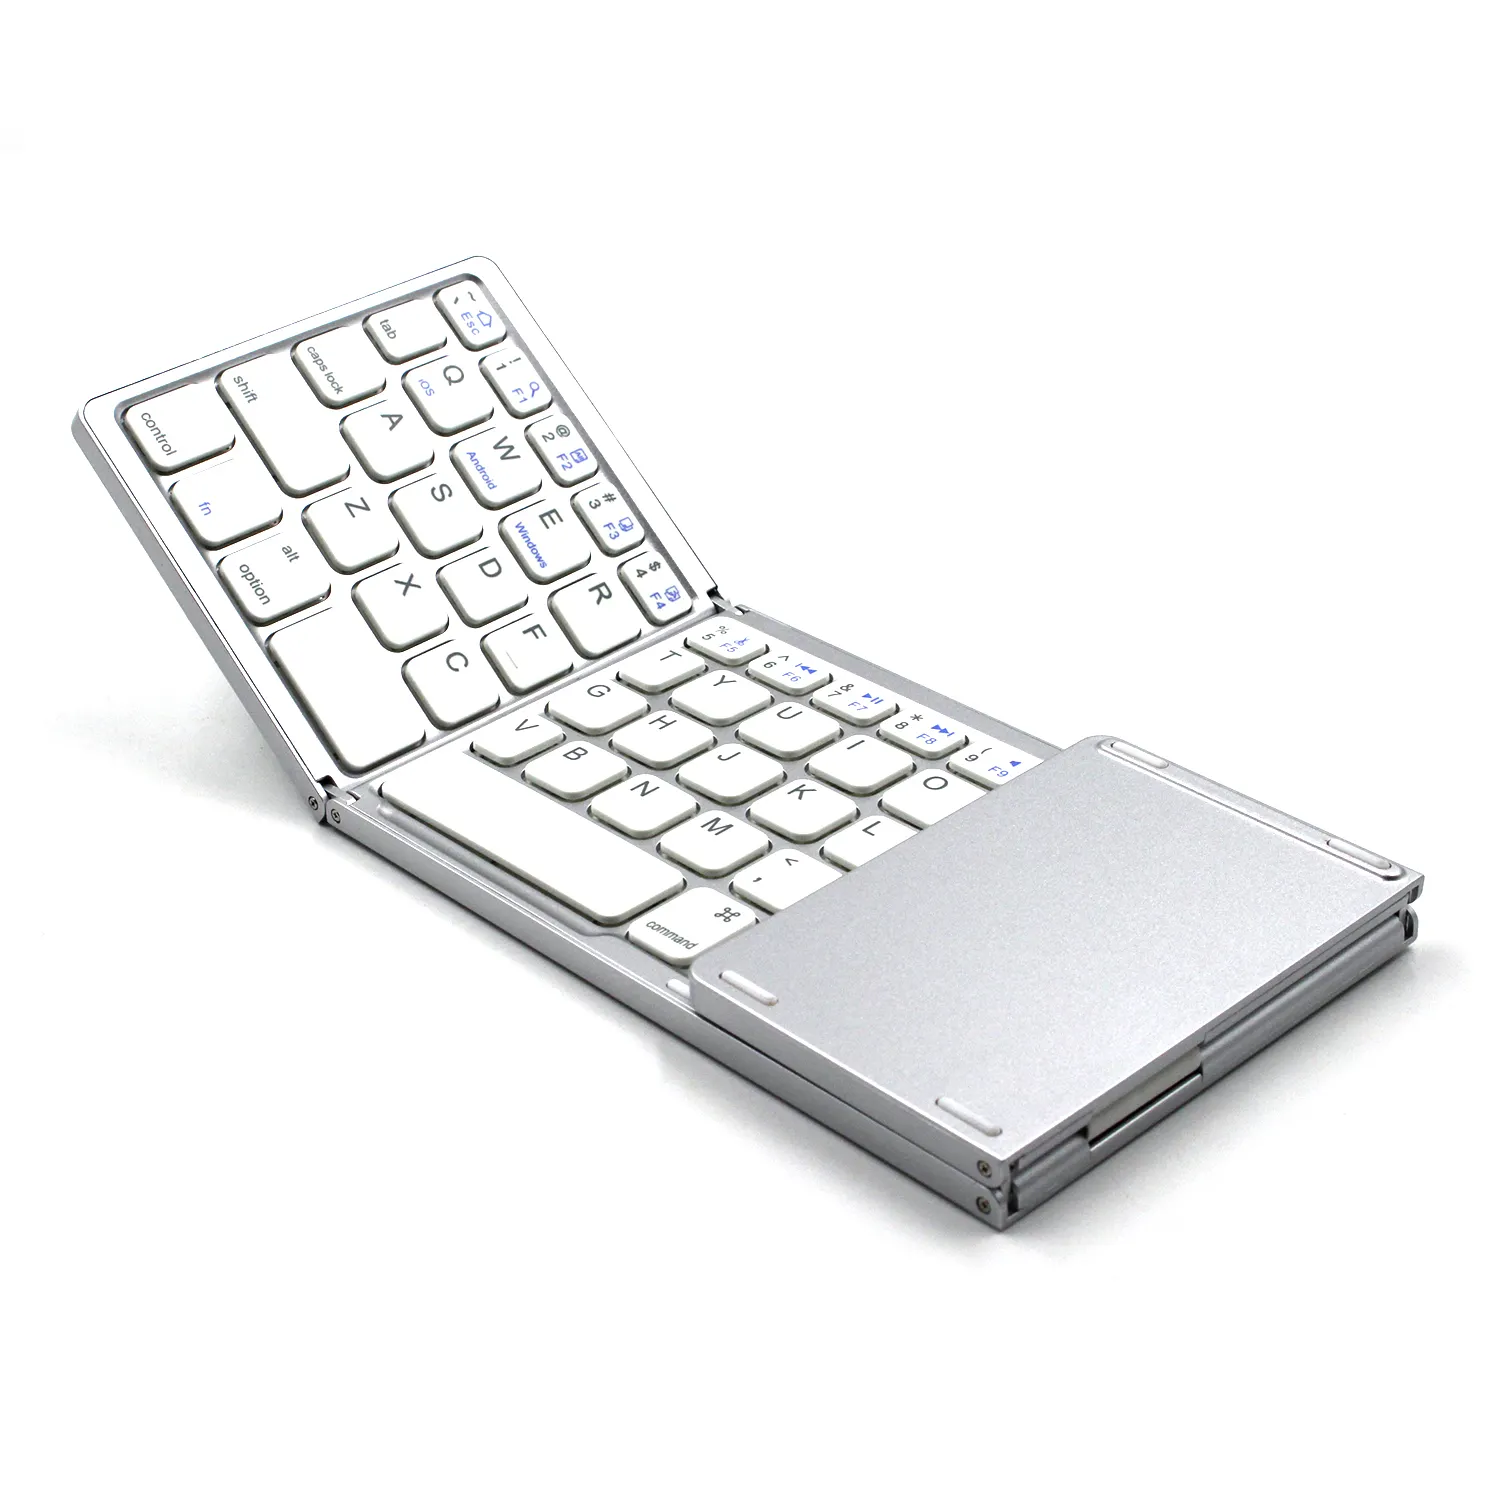 सफेद लेआउट नवीनता प्लास्टिक रिमोट Foldable ब्लूटूथ त्रि तह कीबोर्ड